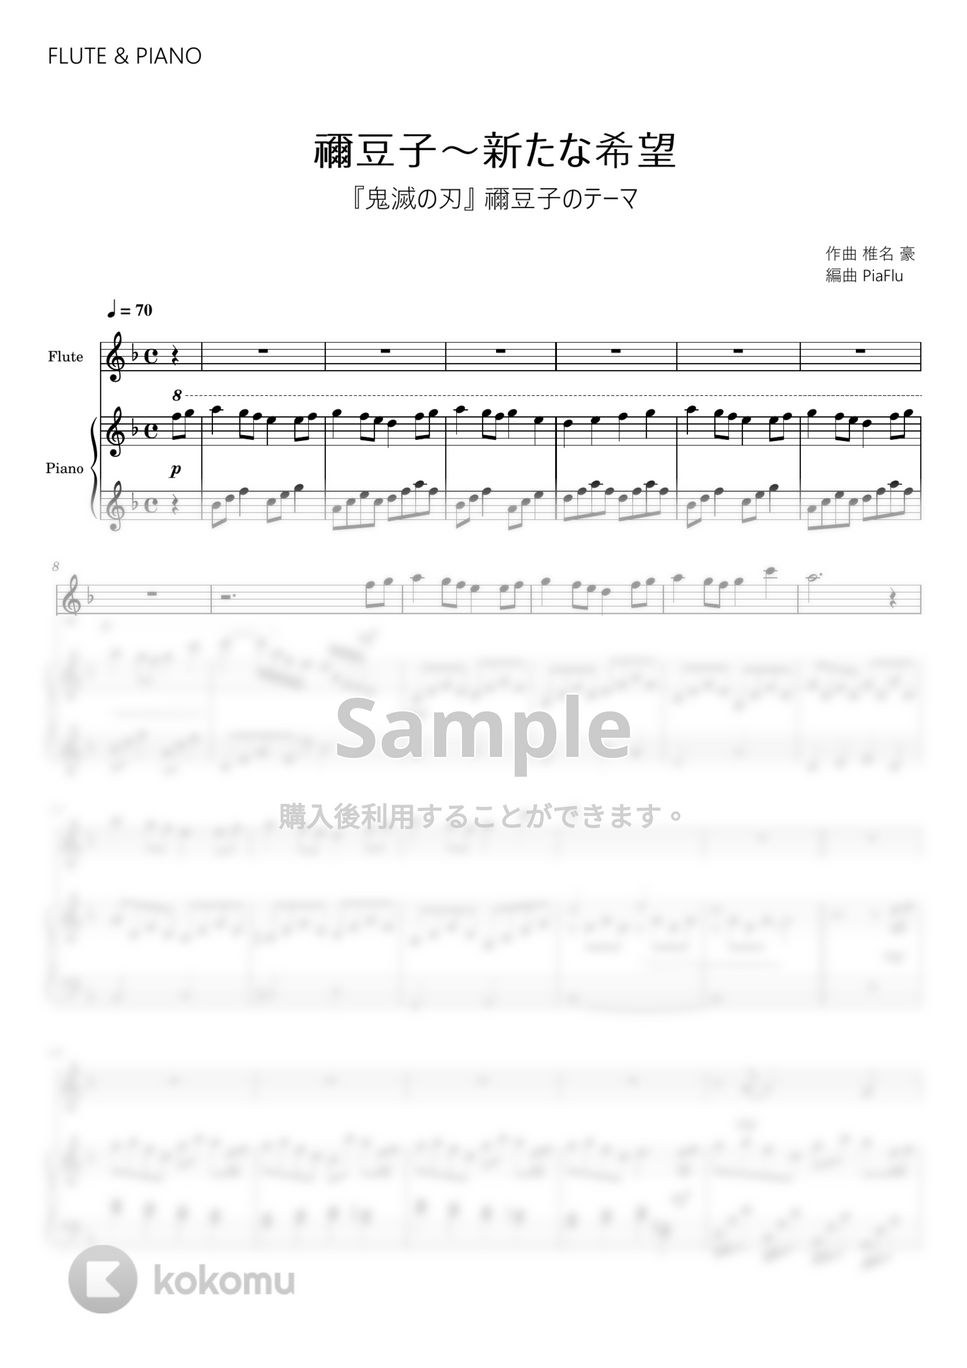 『鬼滅の刃』禰豆子のテーマ - 禰豆子～新たな希望 (フルート&ピアノ伴奏) by PiaFlu